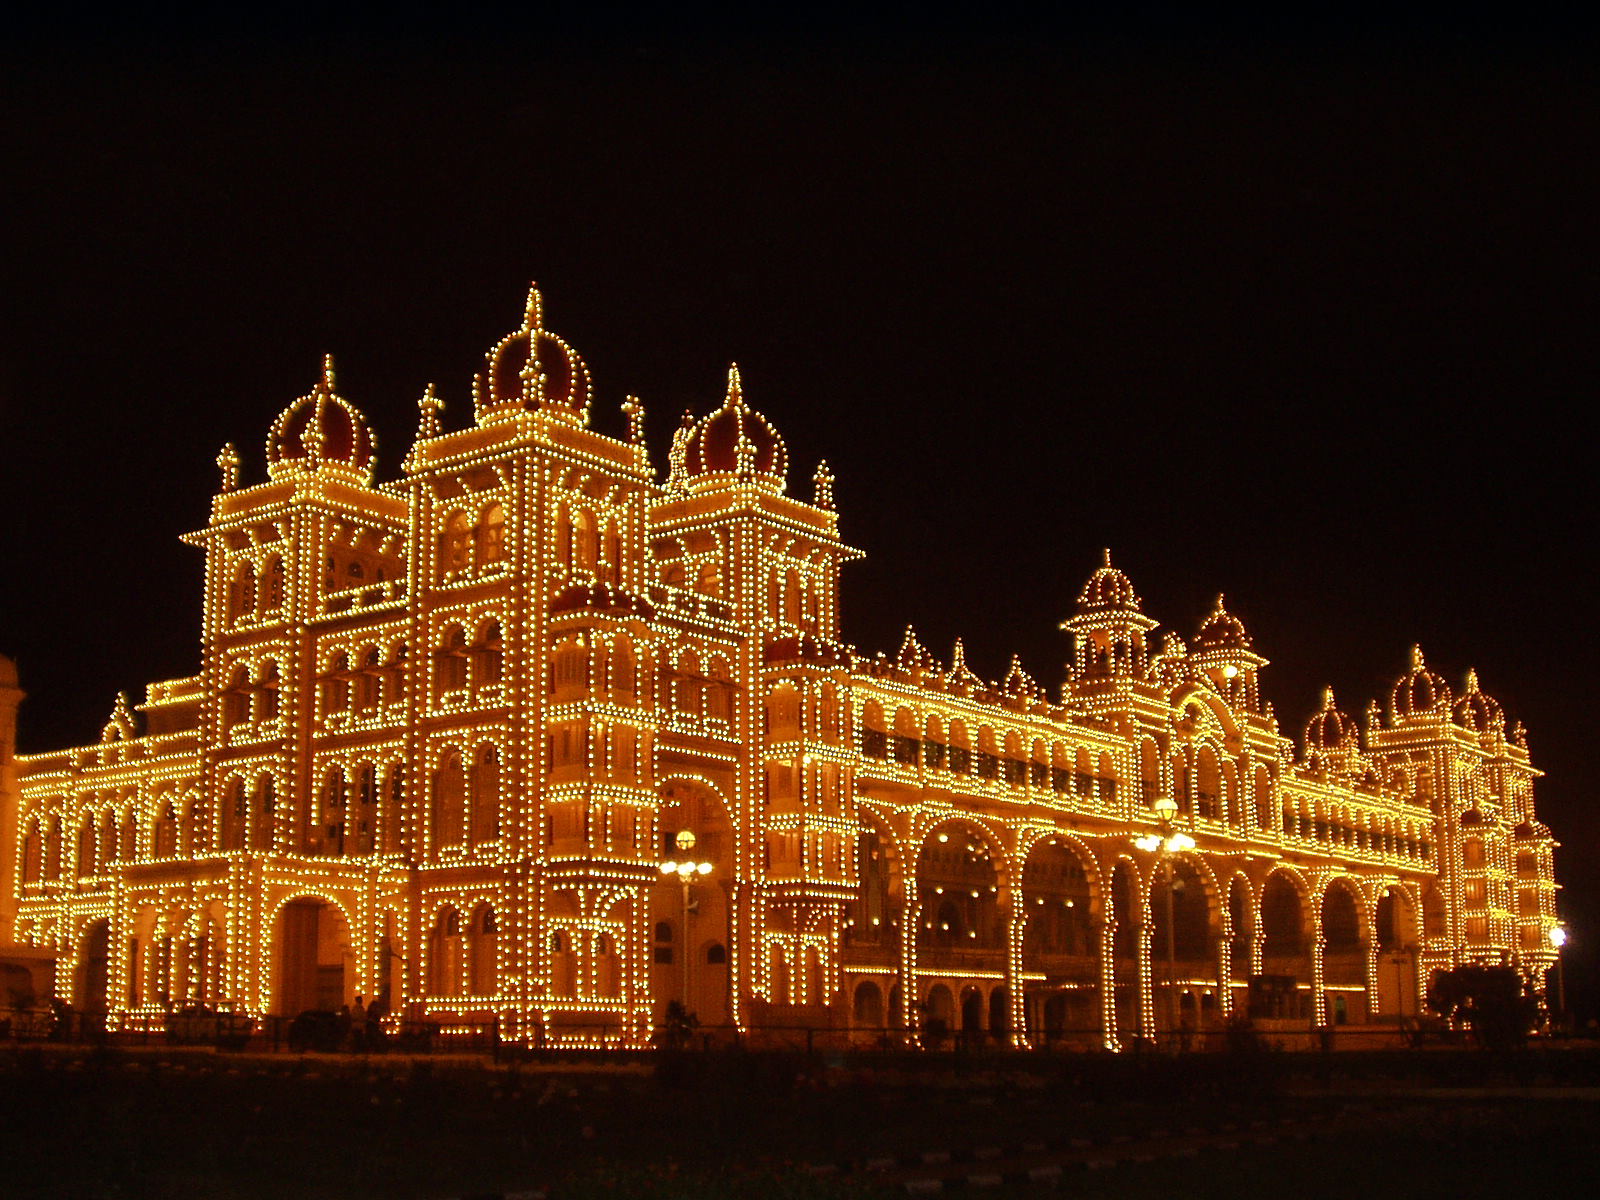 World Forts, Palaces & Castles: Mysore Palace/Wodeyar Palace, Mysore